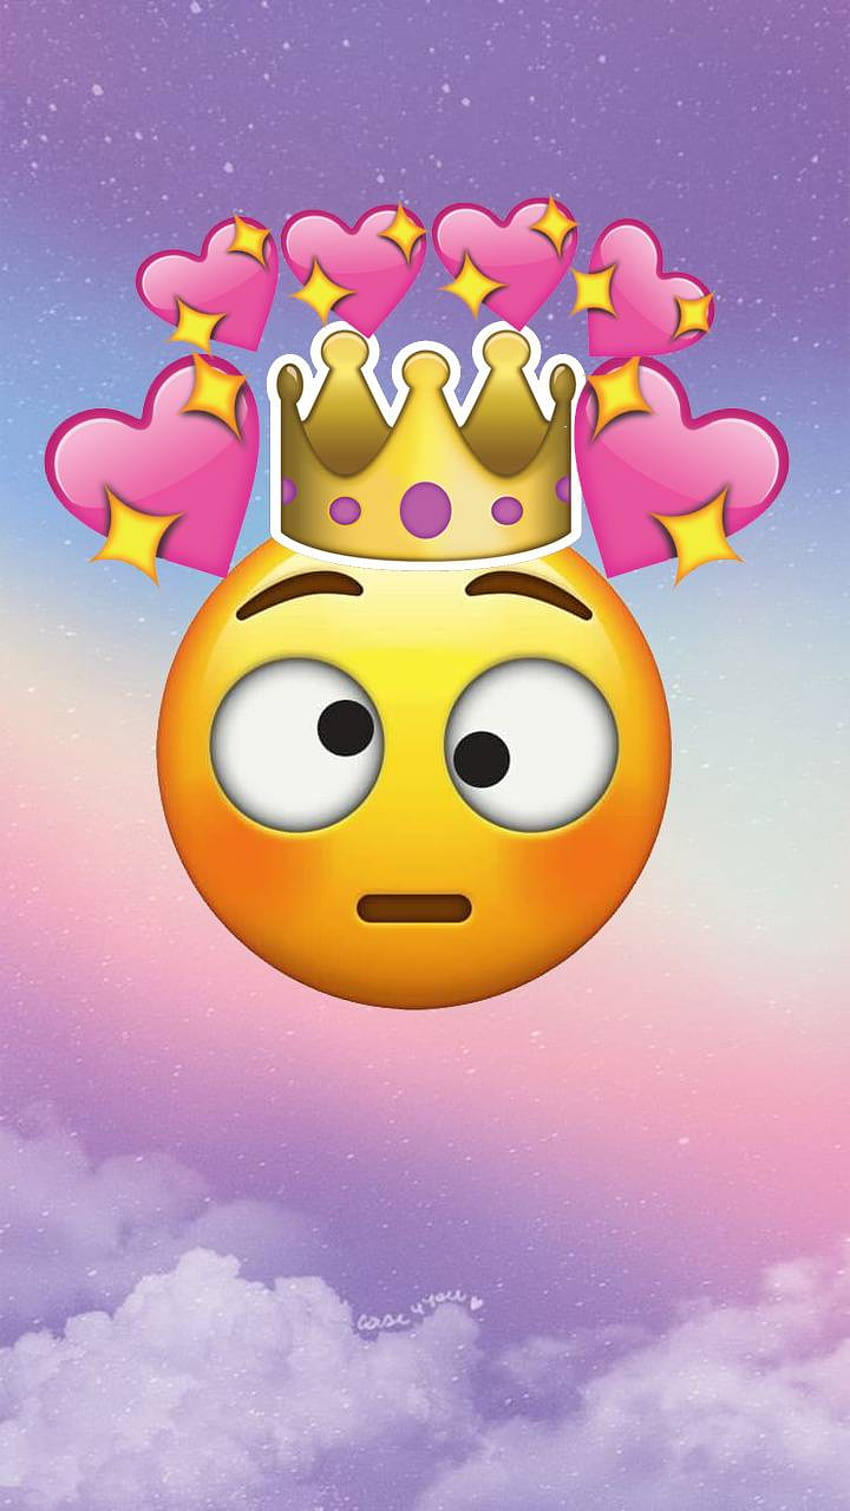 Queen Emojis Wallpapers  Wallpaper Cave